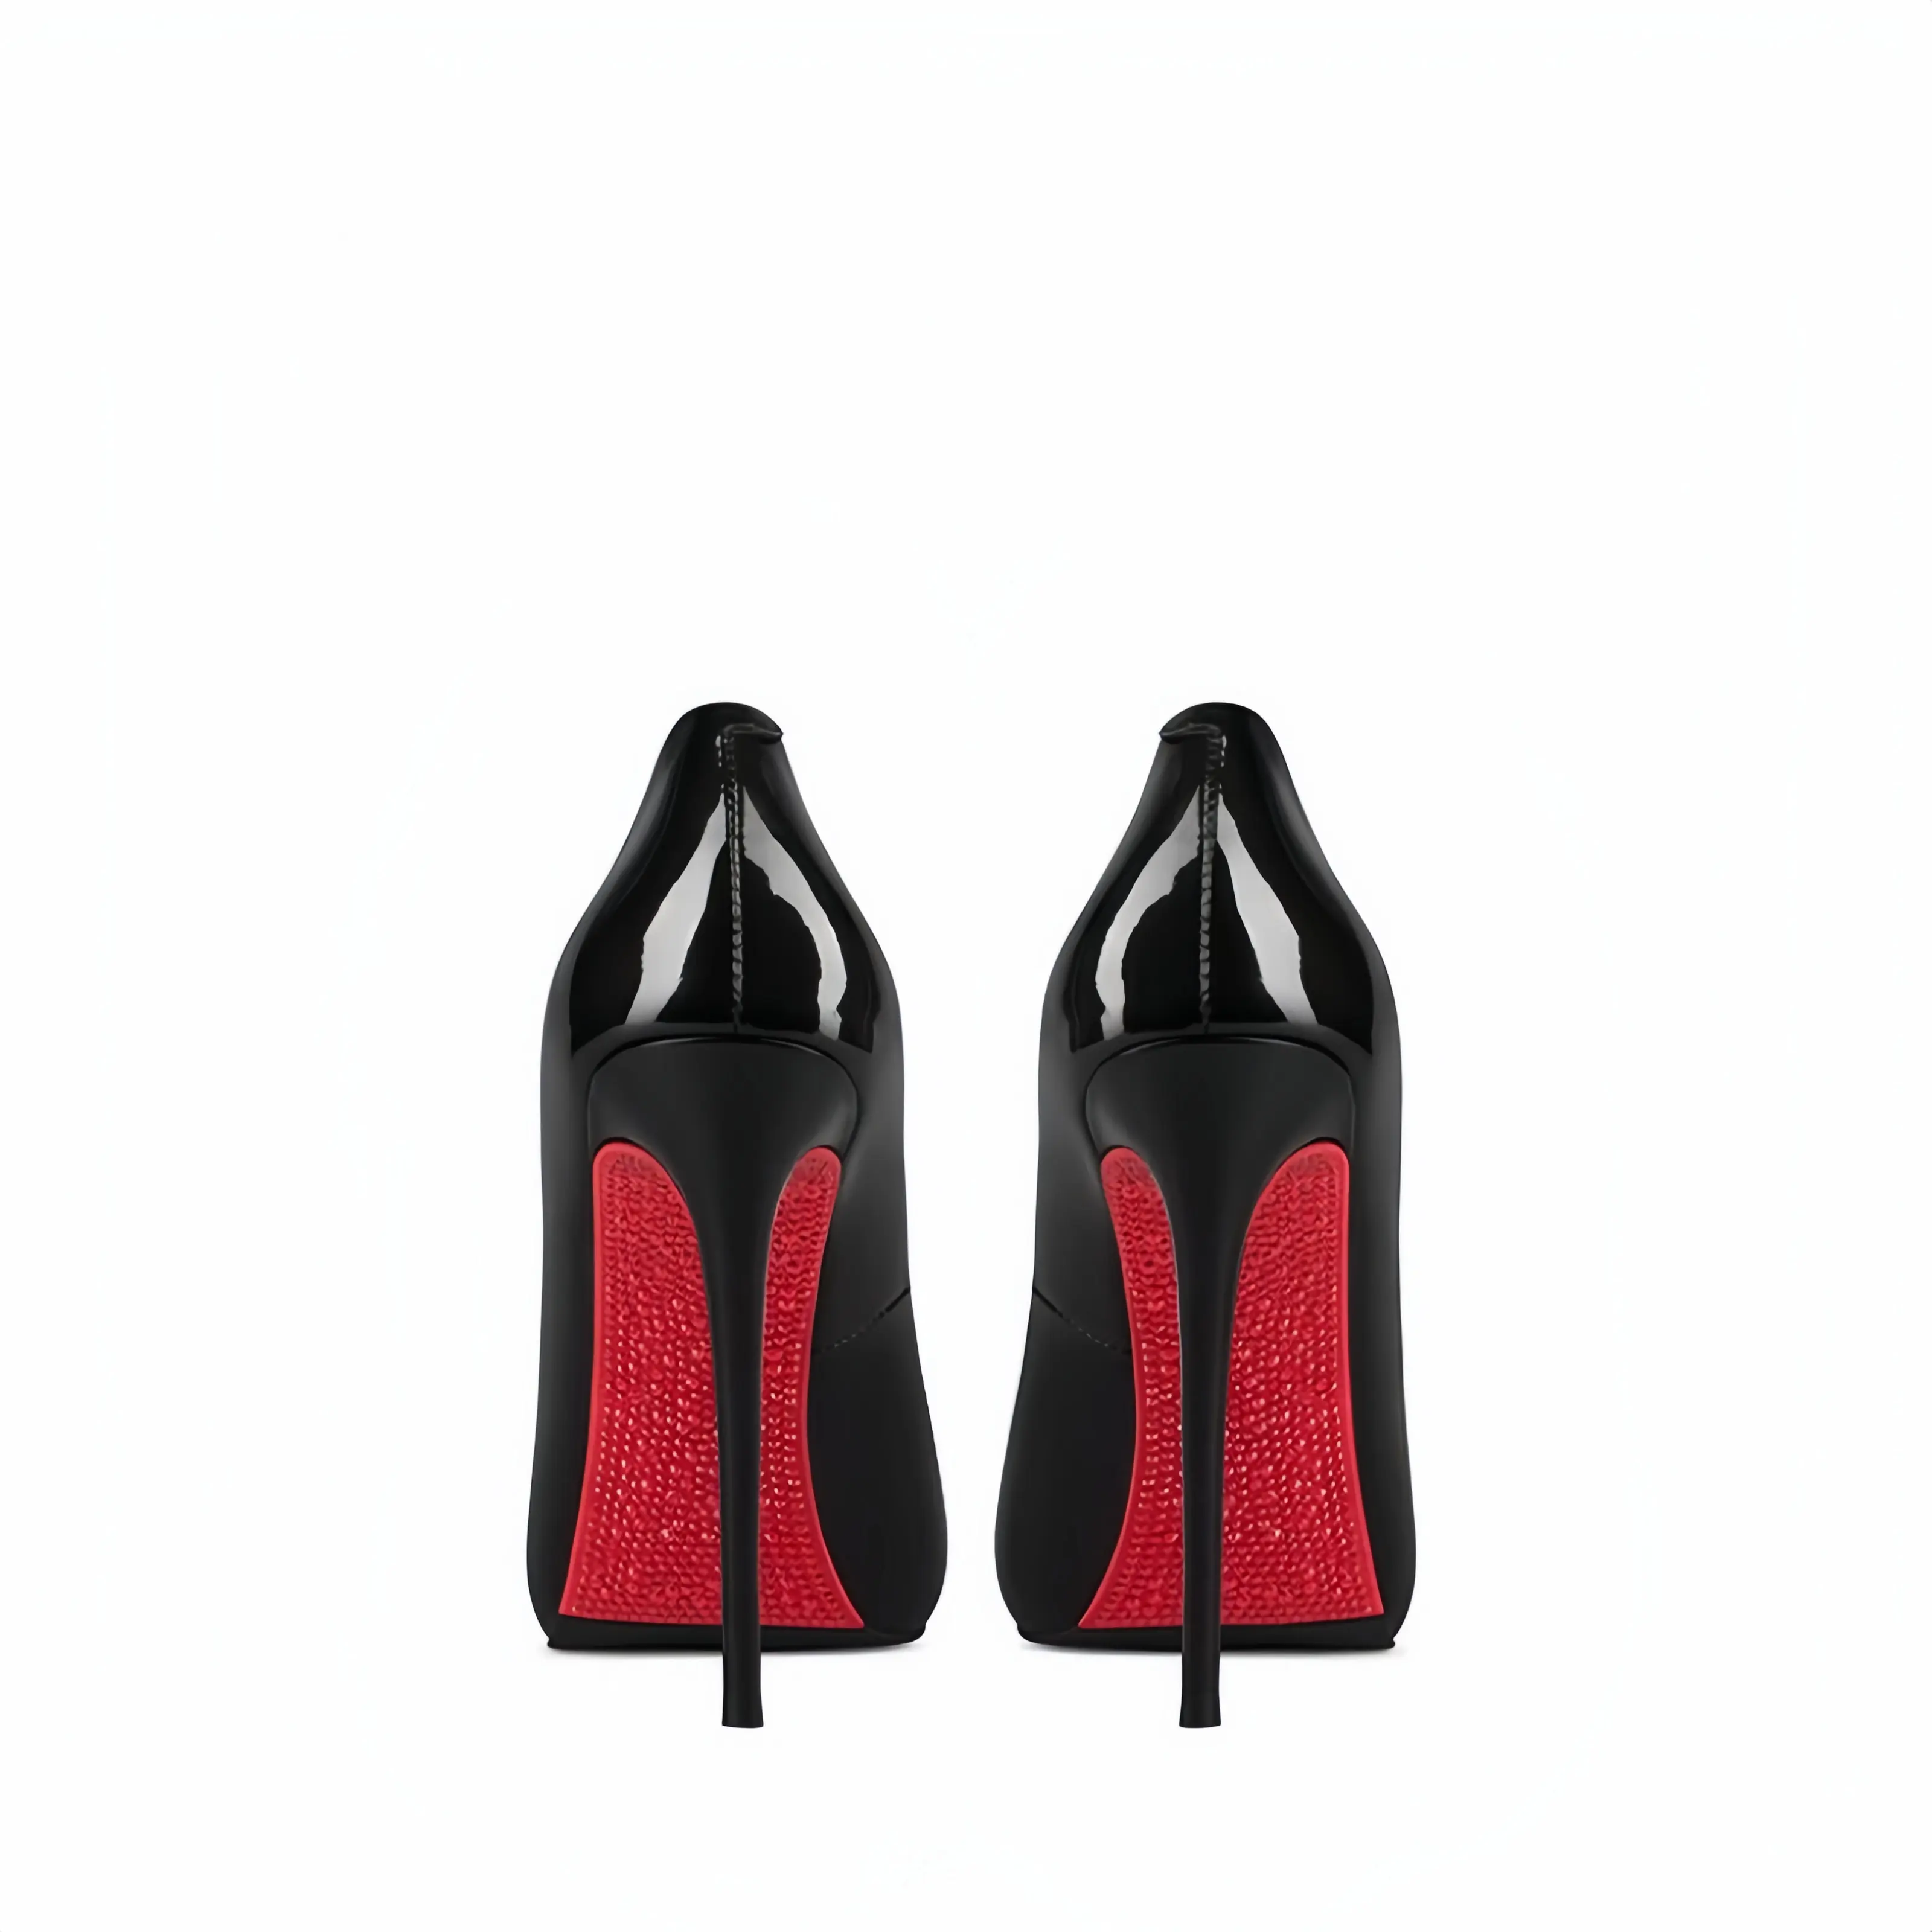 Sepatu hak tinggi wanita ukuran besar elegan grosir hak Stiletto tren mode musim gugur dengan ujung runcing